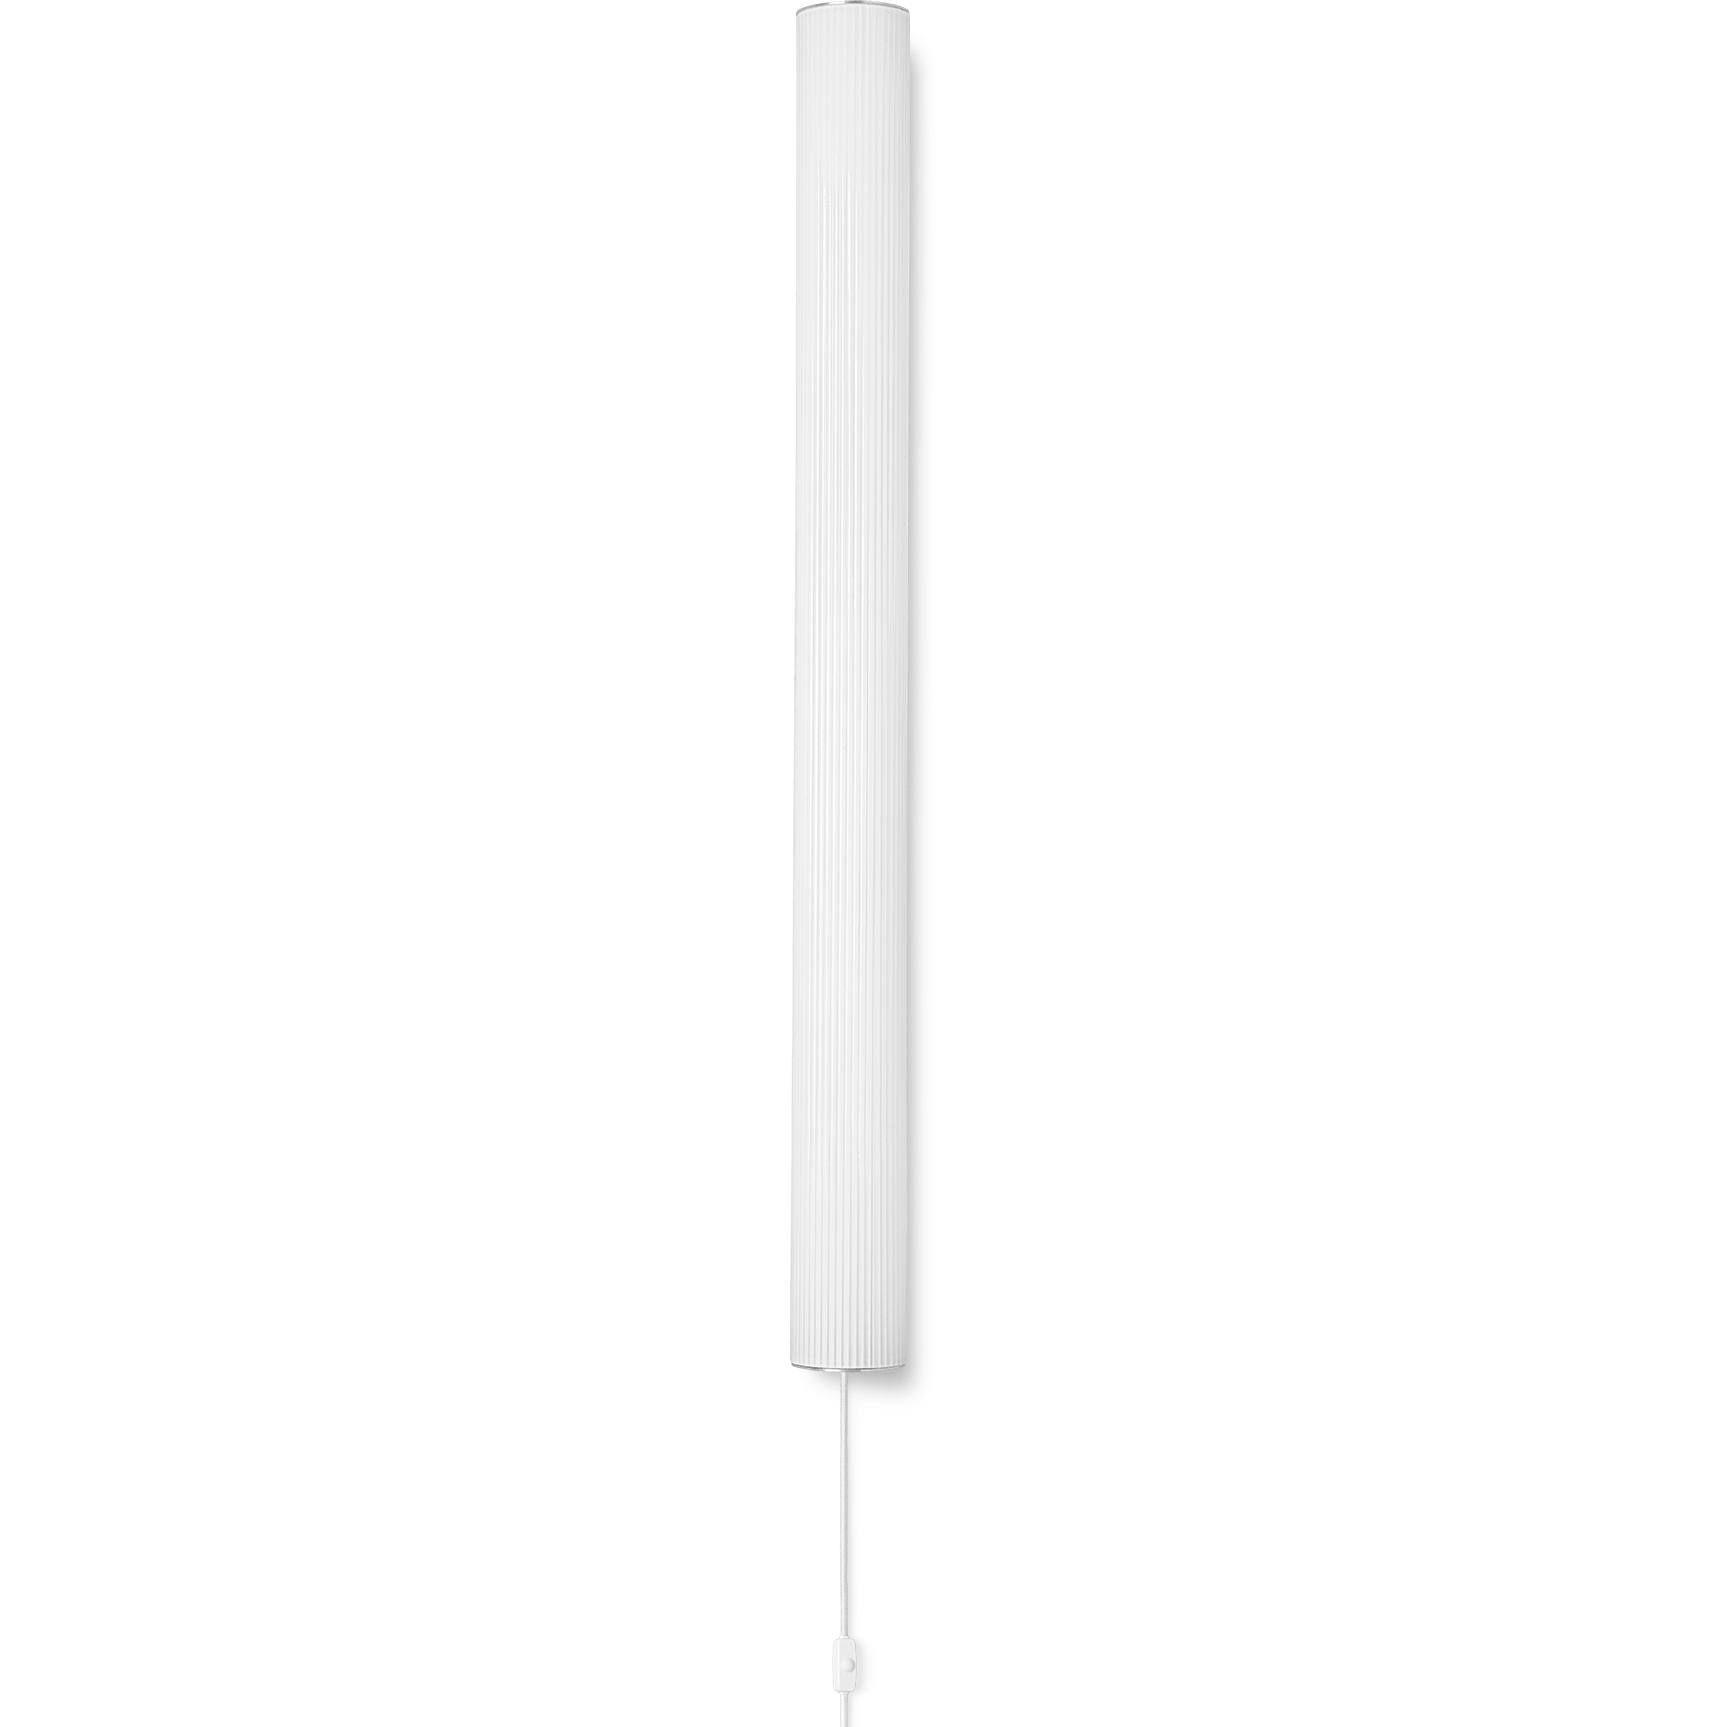 Ferm Living Vuelta Wall lampe en acier inoxydable Ø100 cm, blanc